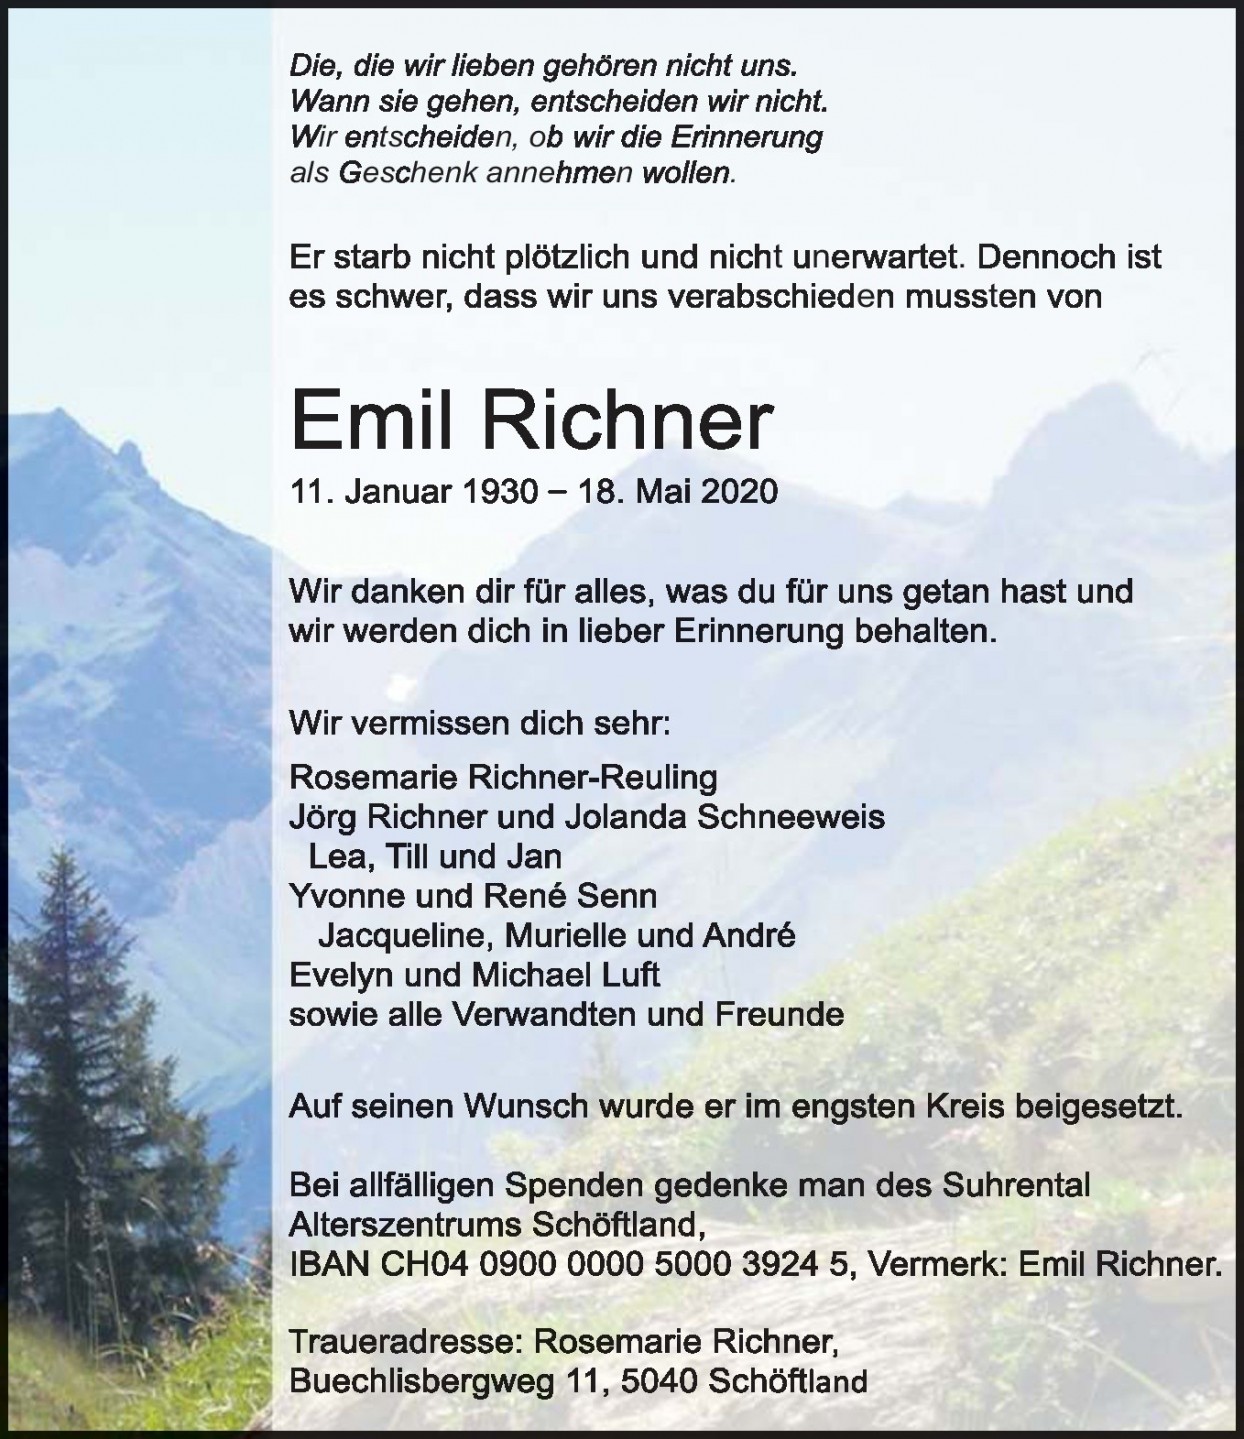 Emil Richner